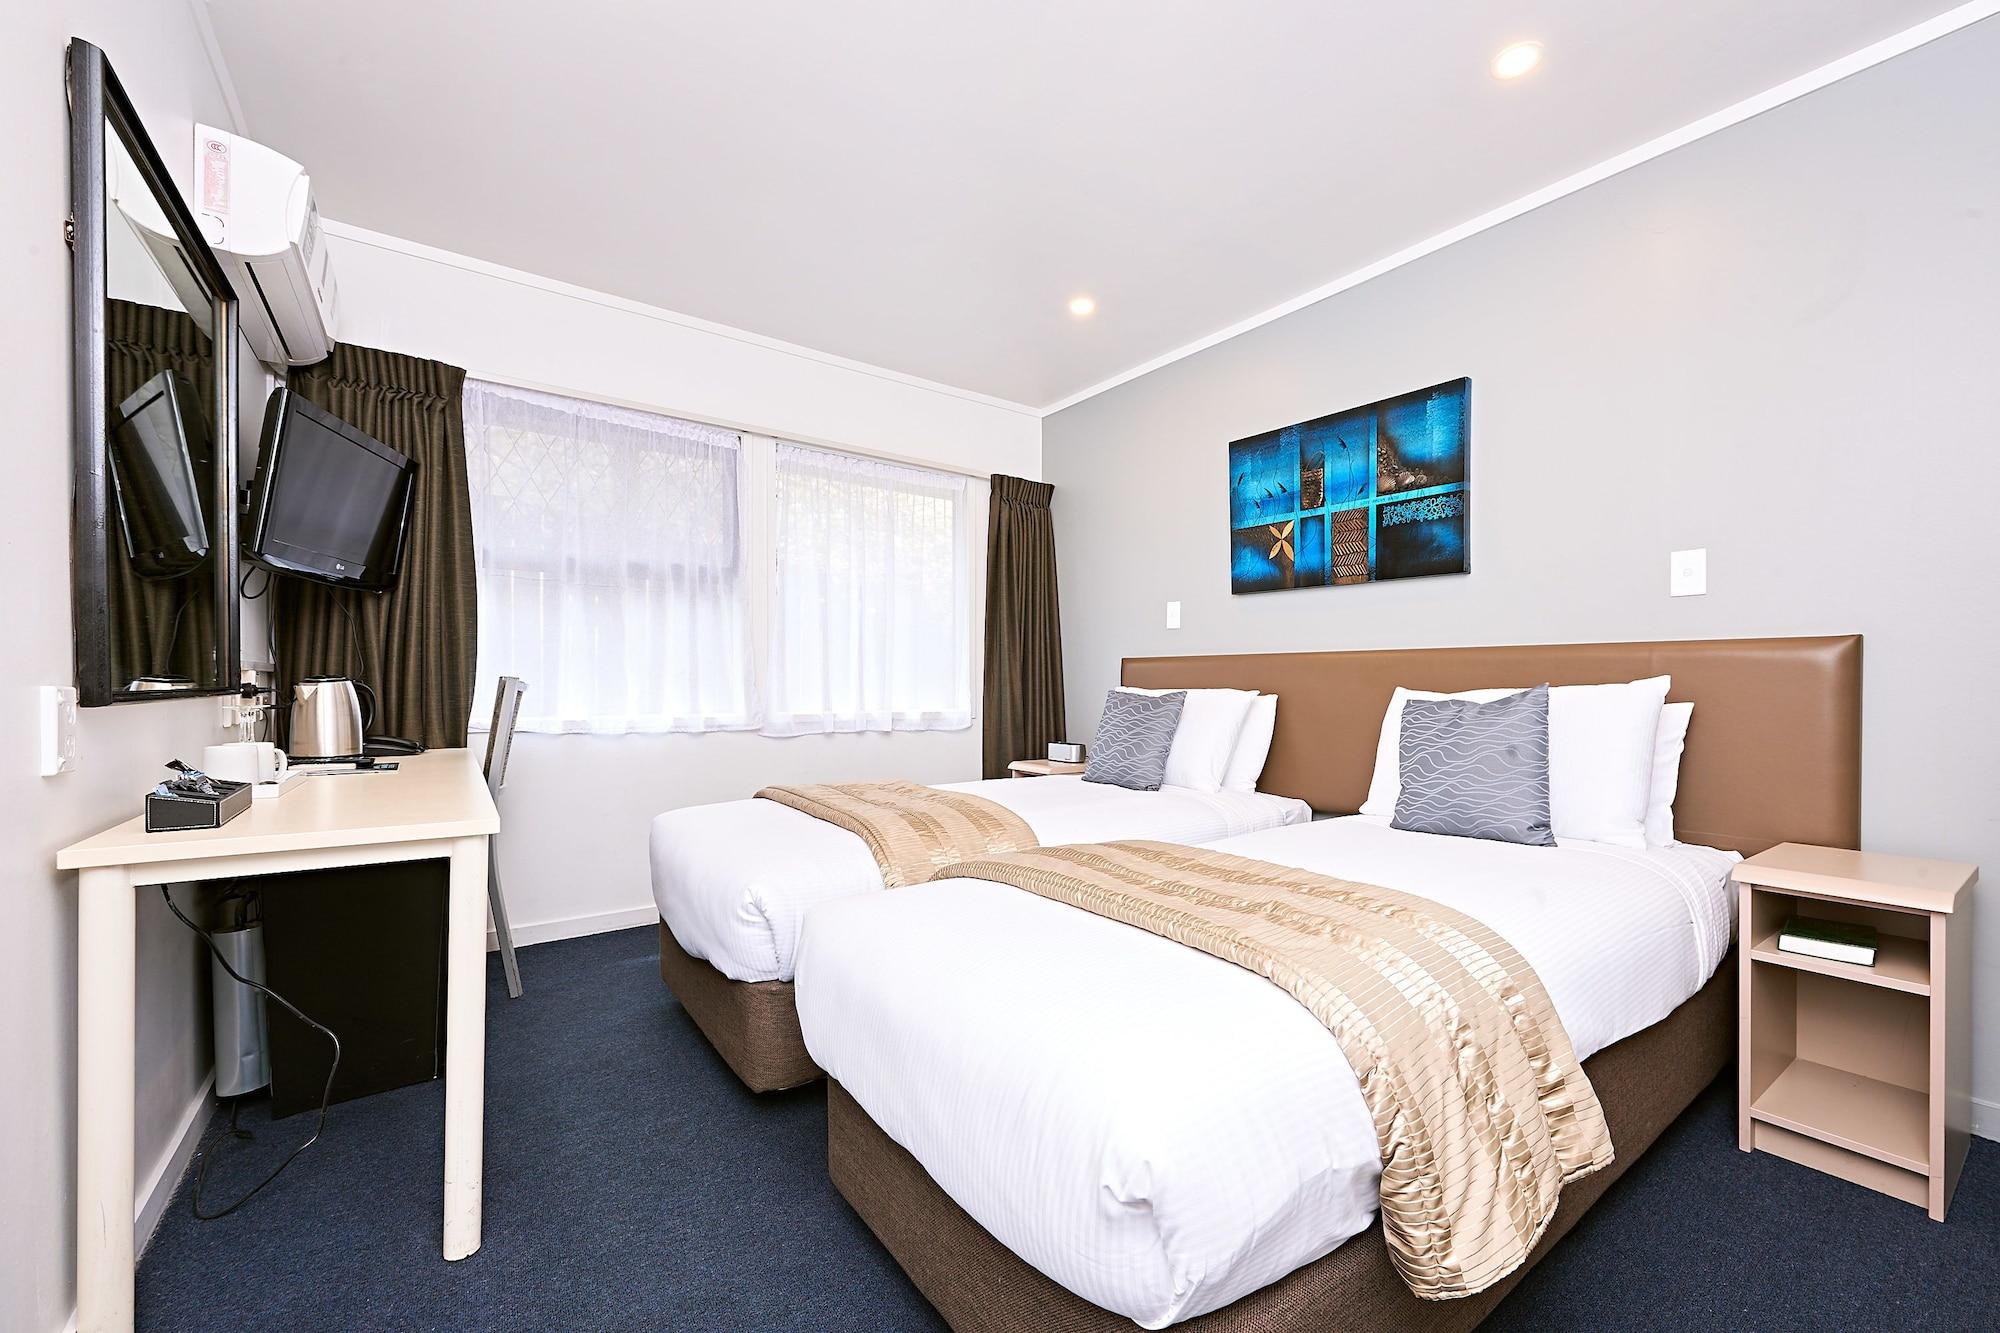 Mount Richmond Hotel Auckland Kültér fotó